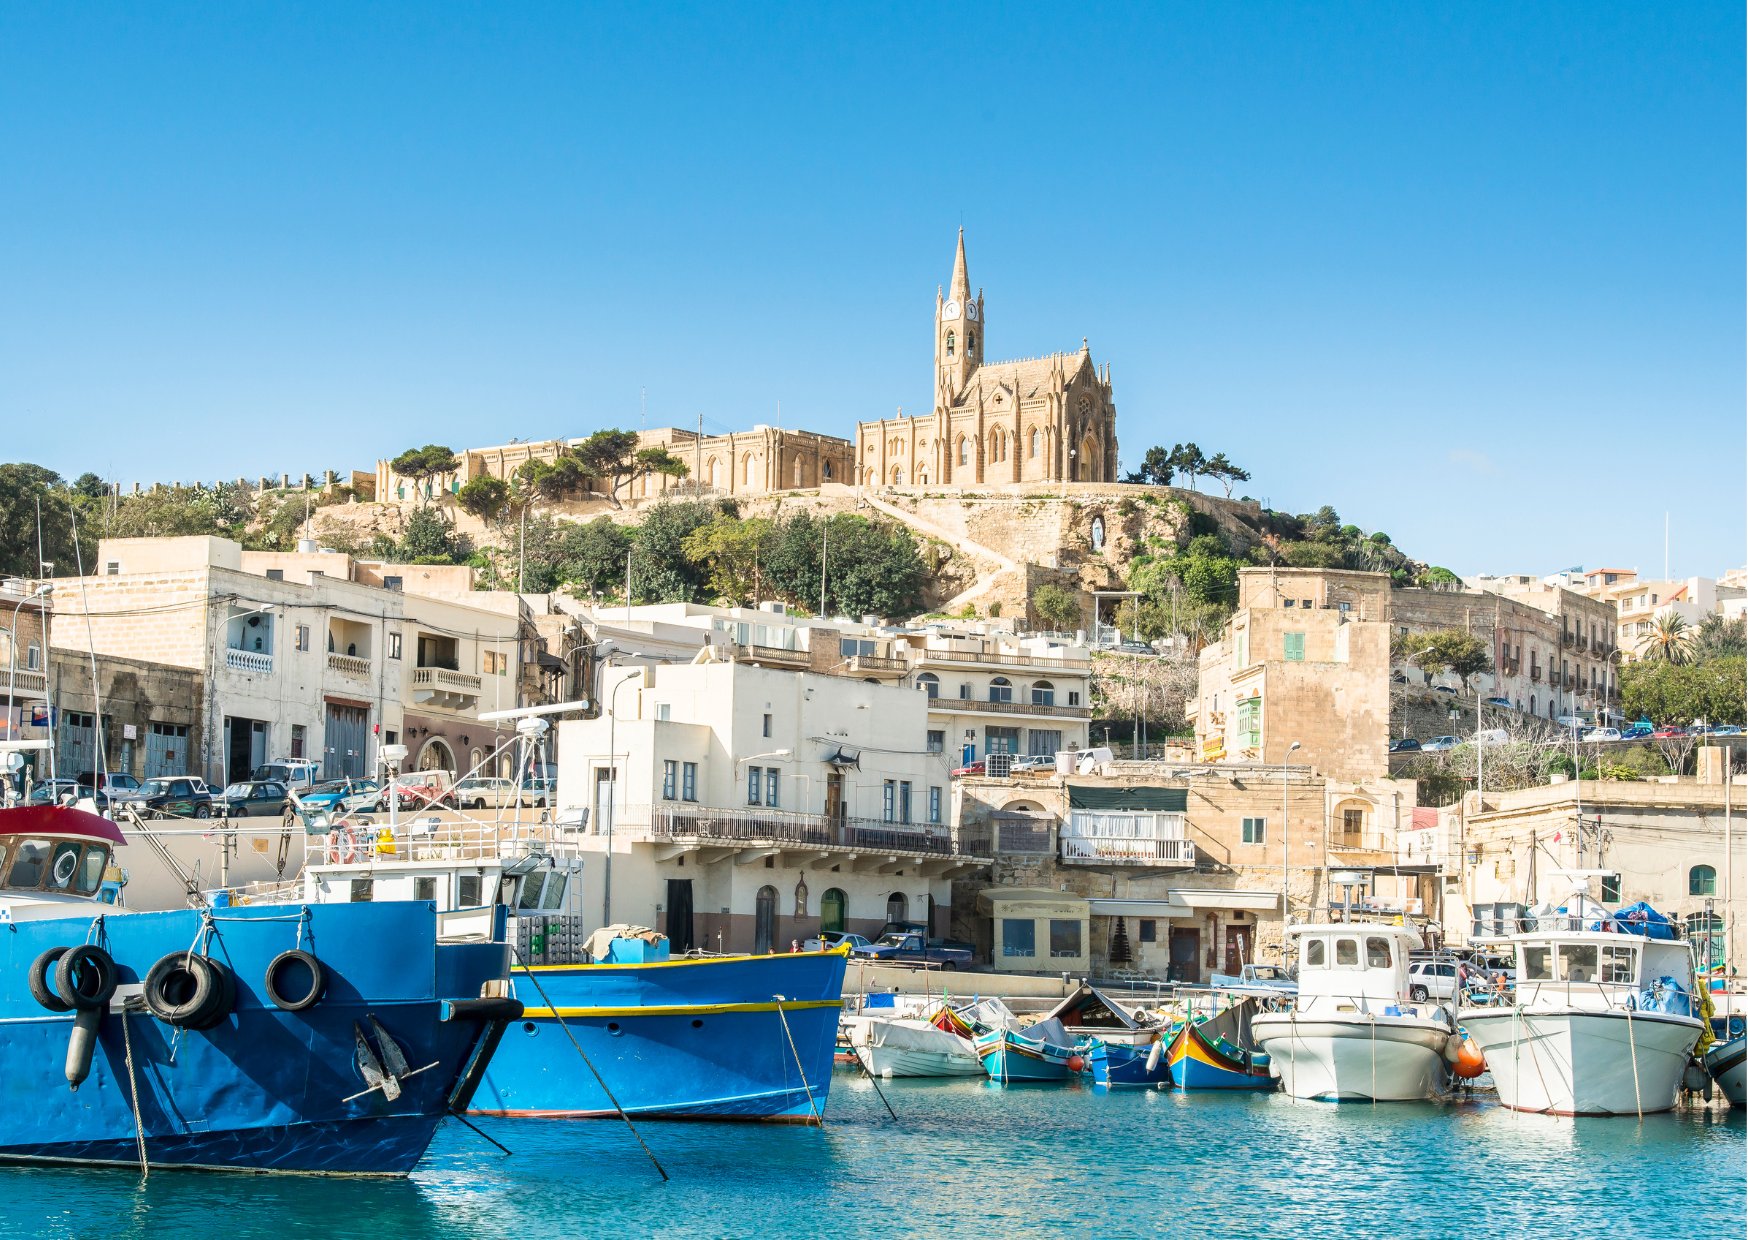 Visiter l’Ile de Gozo, une excursion à faire depuis Malte